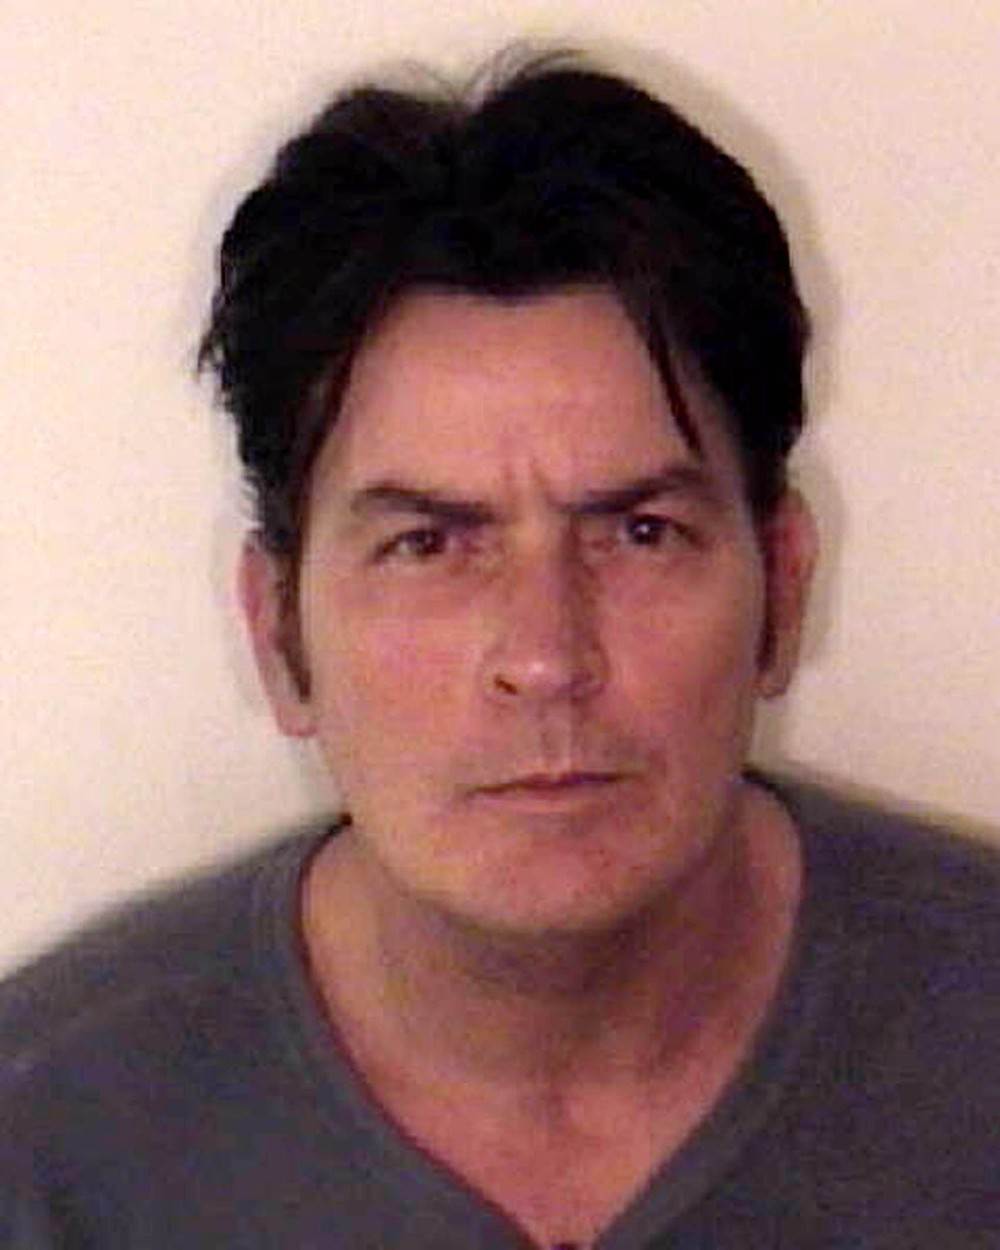 Charlie Sheen je završio u zatvoru na Božić 2009. godine